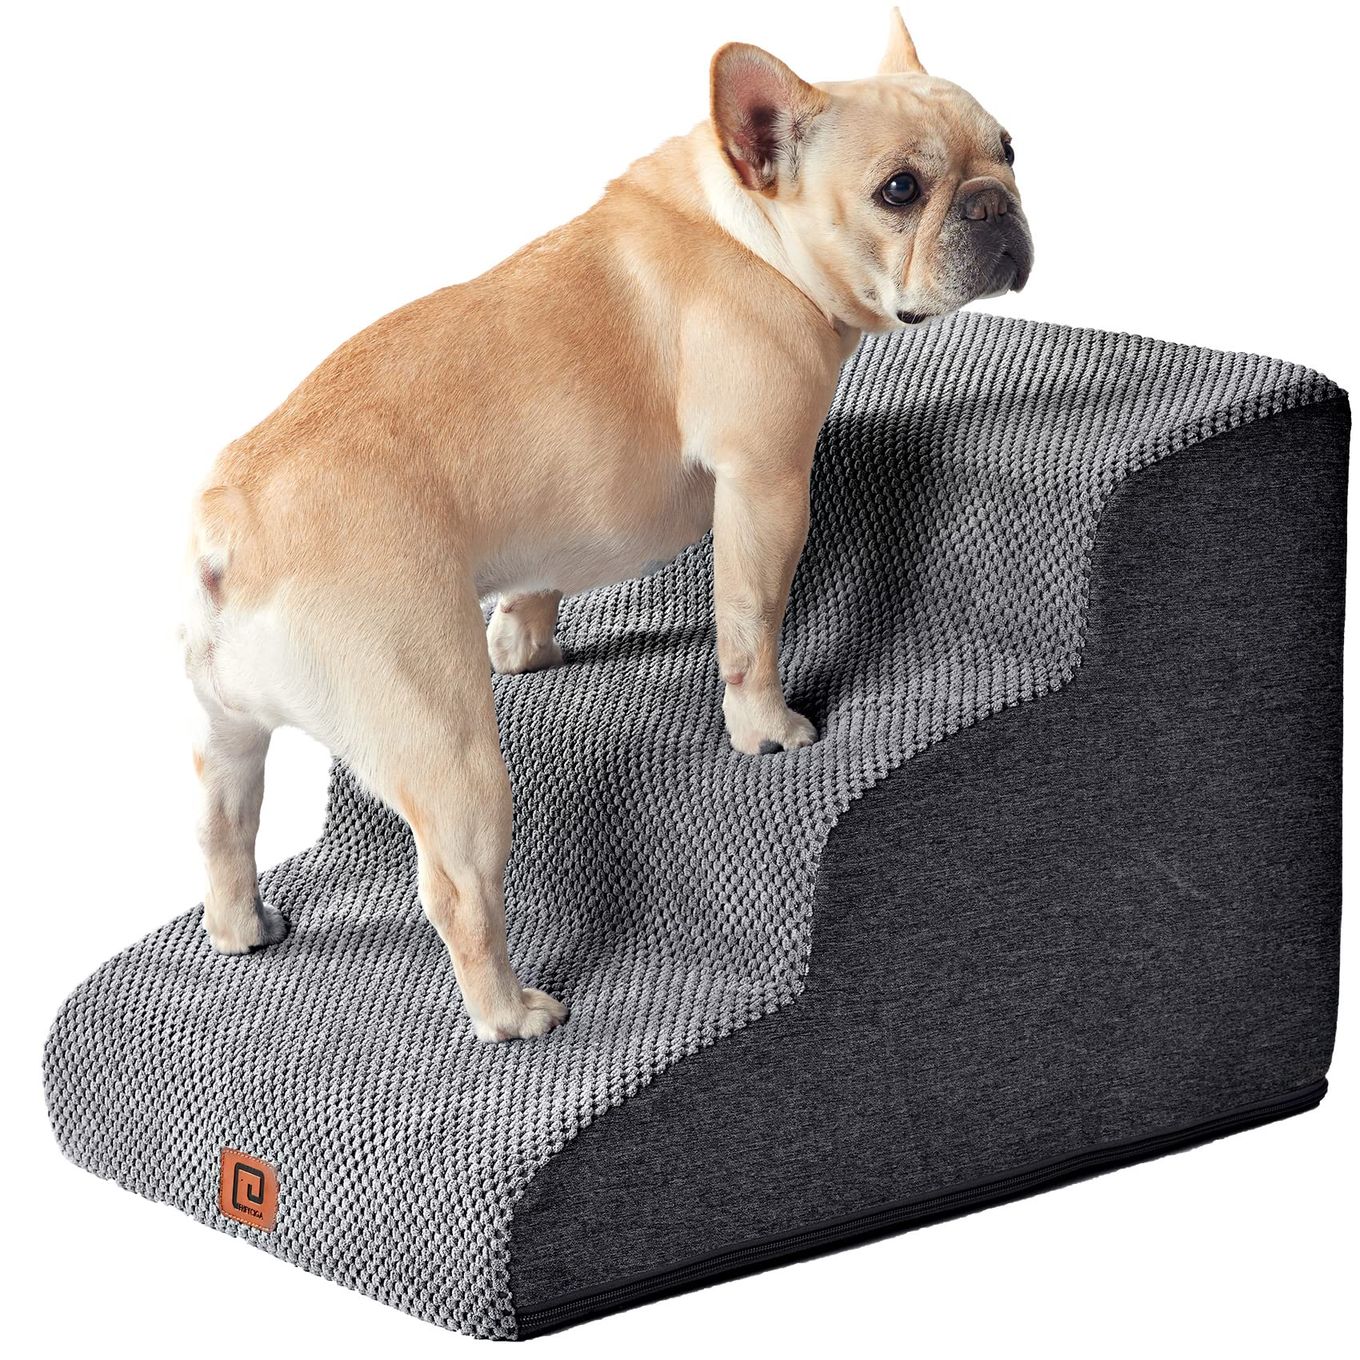 商品情報商品の説明主な仕様 【快適なペット階段】このフォームの犬用階段は、ベッド、ソファ、または他の家具の端に直接設計されているため、ペットが快適に上り下りできます。これは小型犬用階段です。br【ユニークなデザイン】純粋な泡の33D密度により、この階段はペットが上を歩くときにより安定します。犬用ベッドステップはペットが移動する際に強力なサポートを提供します。低角度斜面設計で関節を保護します。br【2つのステップサイズ】この犬用階段には2つのステップと3つのステップがあります。2つのステップは約33センチの椅子/ソファ/ベッドに適しています。3つのステップは約43センチの椅子/ソファ/ベッドに適しています。br【洗濯】犬用ステップに取り外し可能で洗えるカバーが付いており、ウール製で手洗いまたは洗濯機で洗うことができますので、清掃時間を節約することができます。br【注意事項】発泡体を袋から取り出した後、24〜48時間待ってから使用してくださいません充分膨らんだ後使用しなさい。内部素材(発泡体) を水洗いしないようご注意ください。